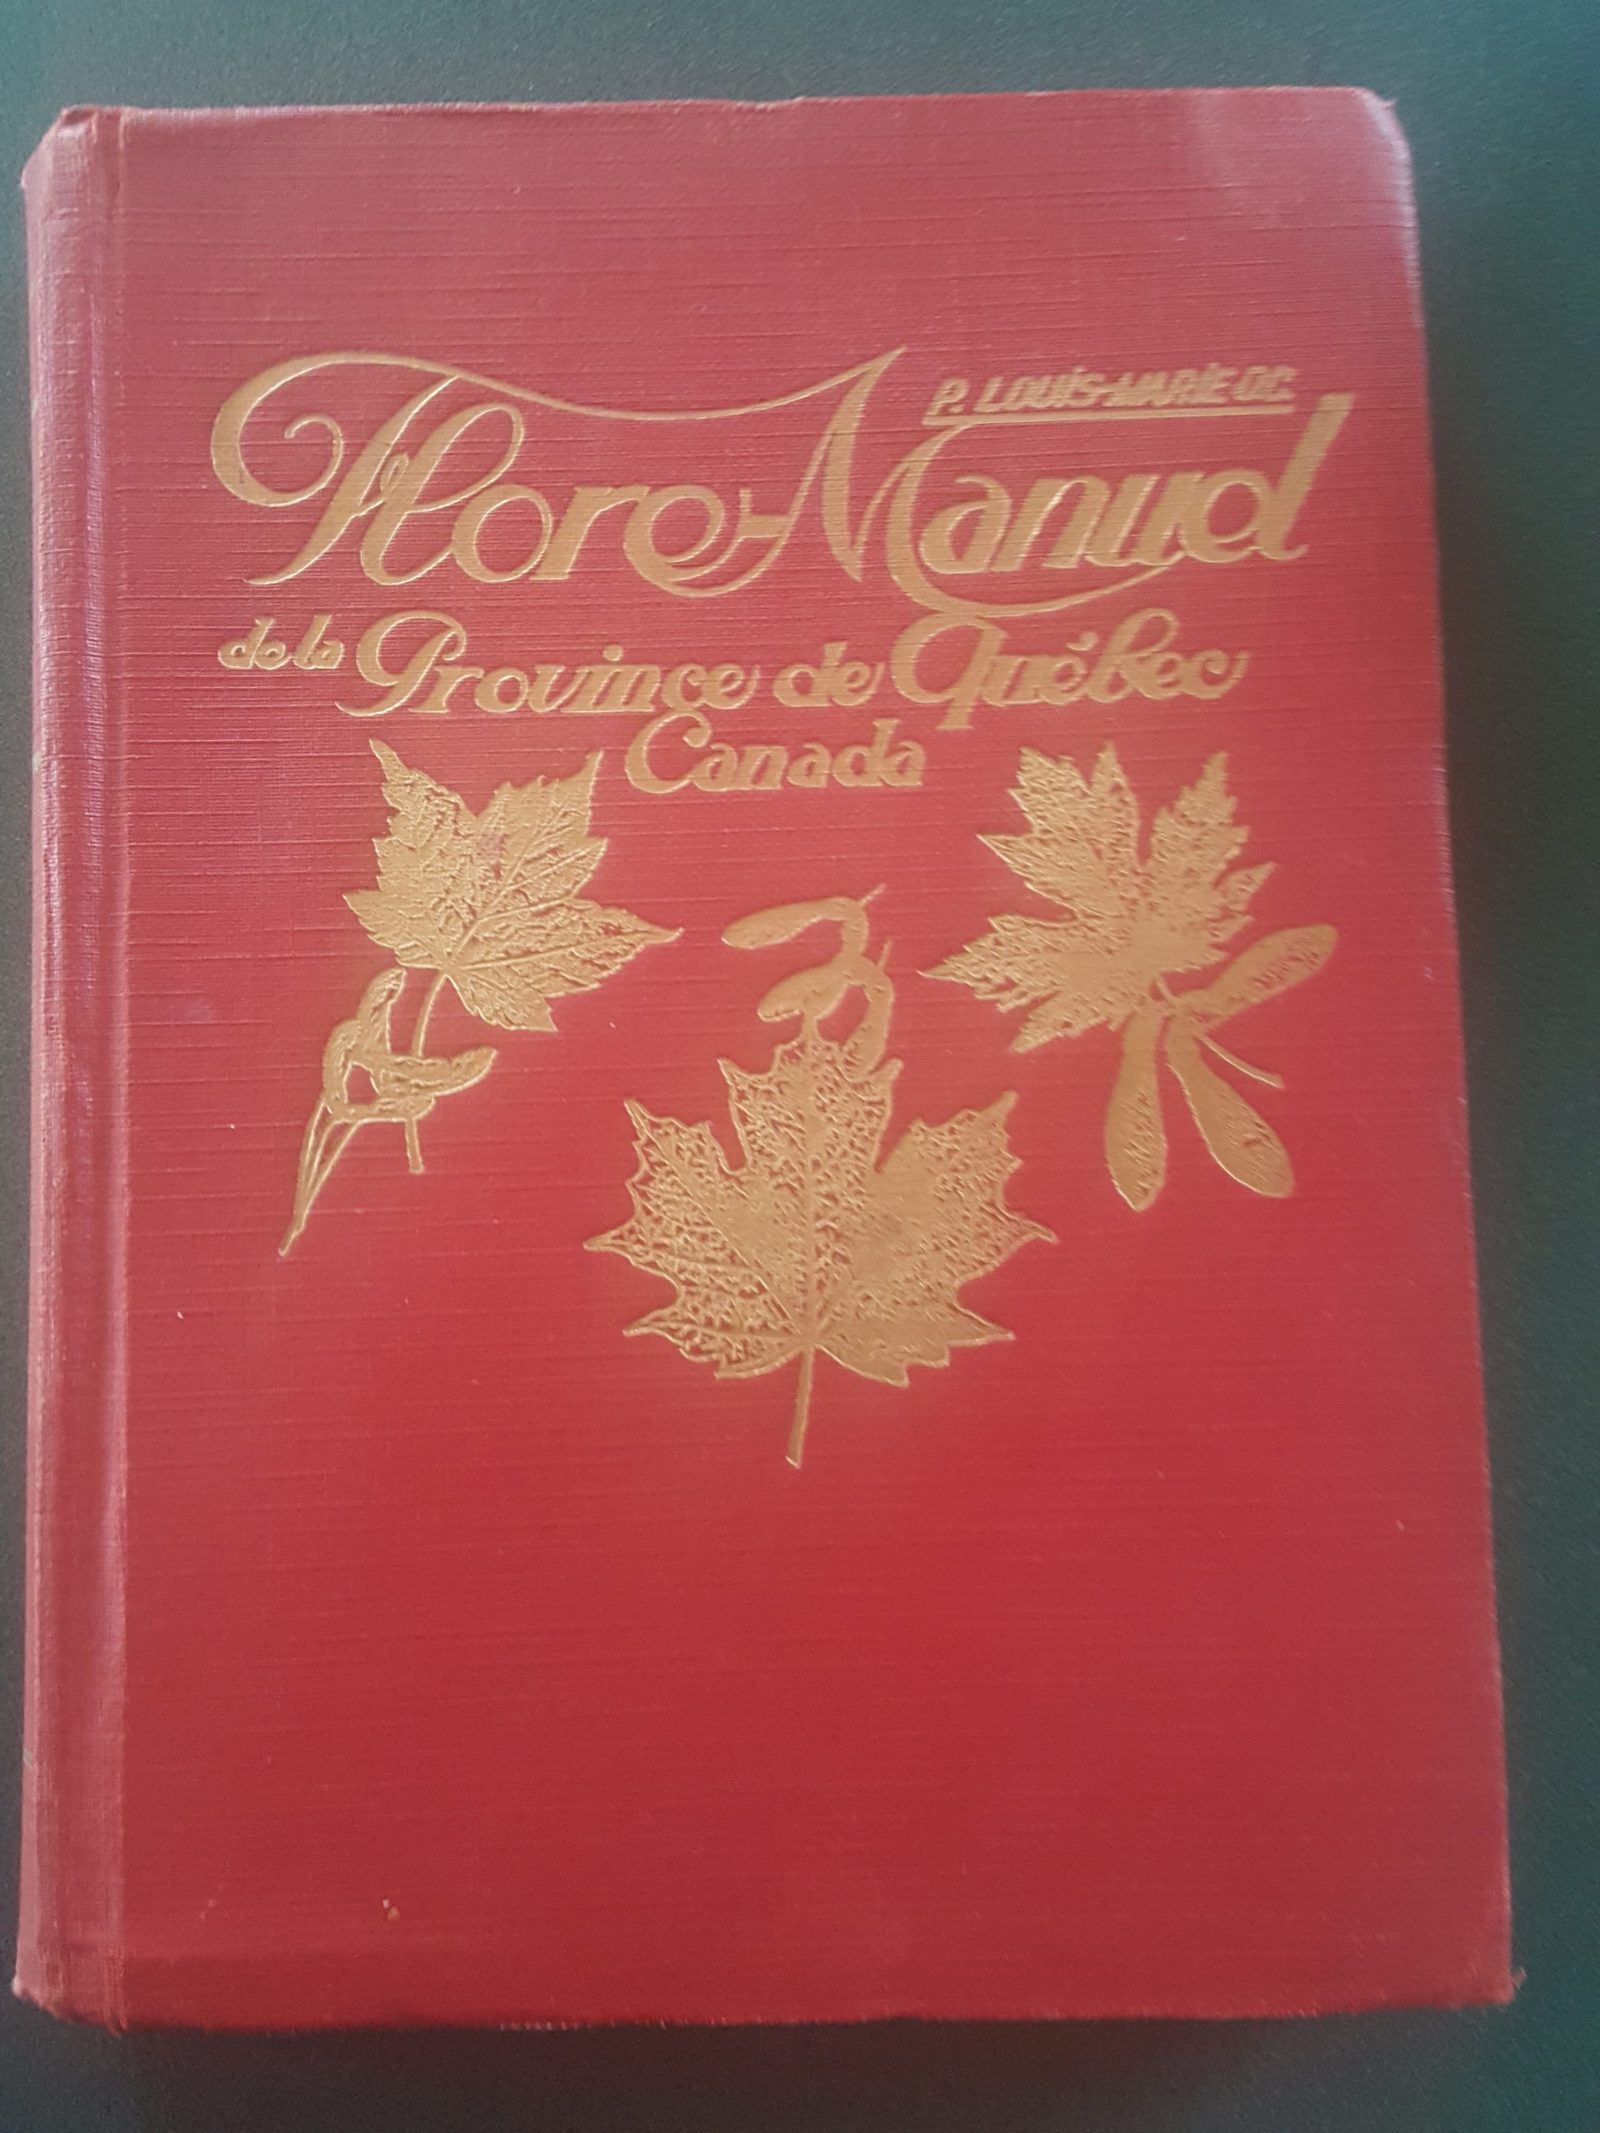 Voici un exemplaire original de la Flore-Manuel de la Province de Québec, publié en 1931. L'auteur en est le Père Louis-Marie, dont le nom a été donné à l'Herbier de l'Université Laval. Photo : Élisabeth Bossert.